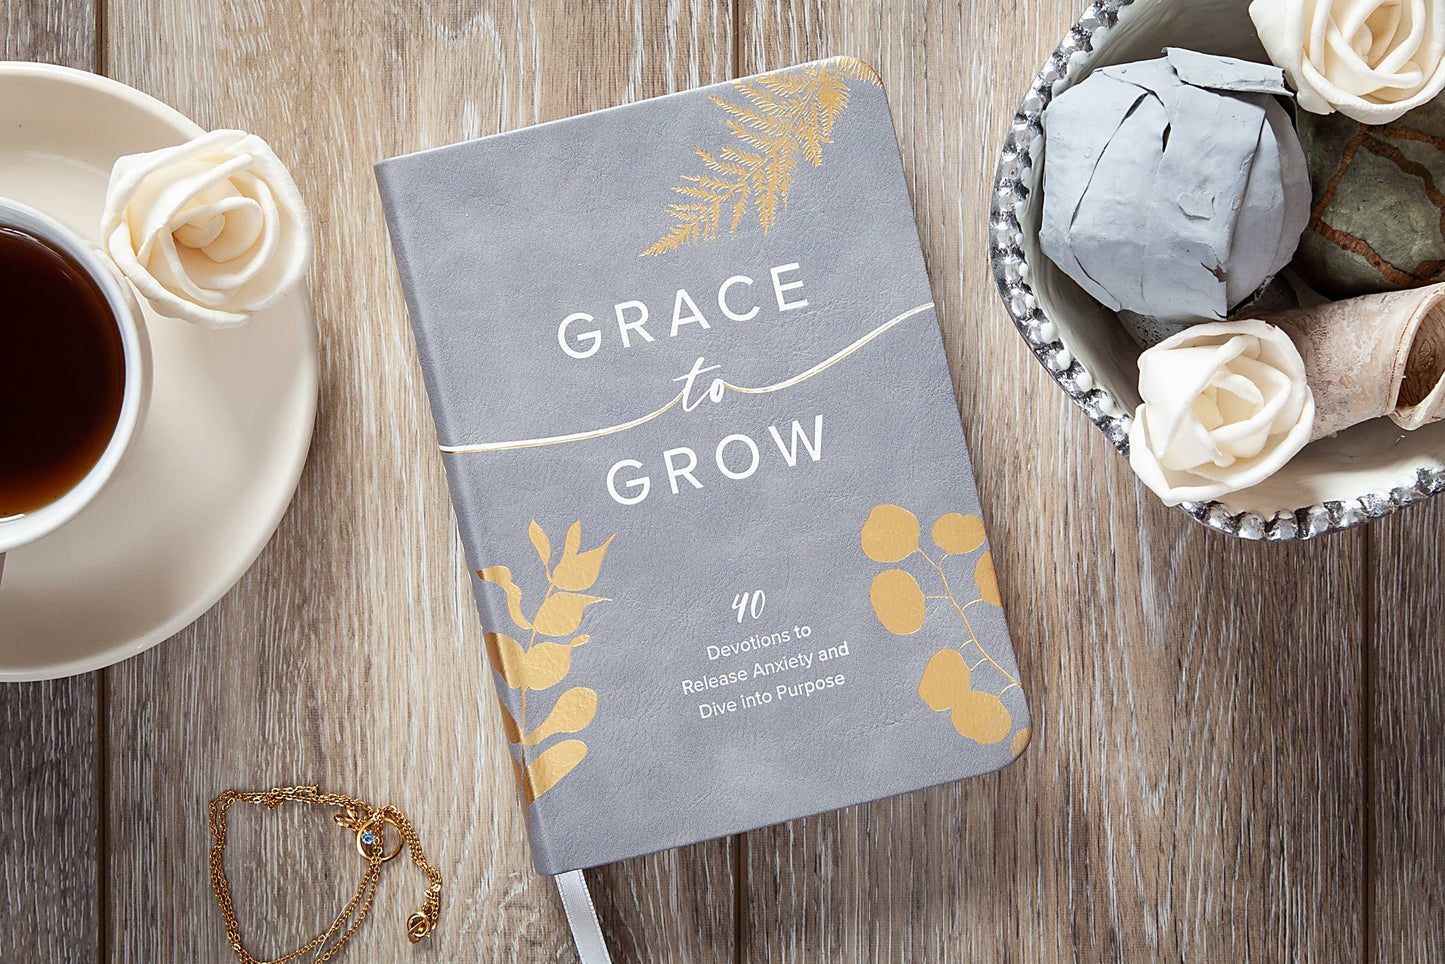 Grace to Grow Devotional